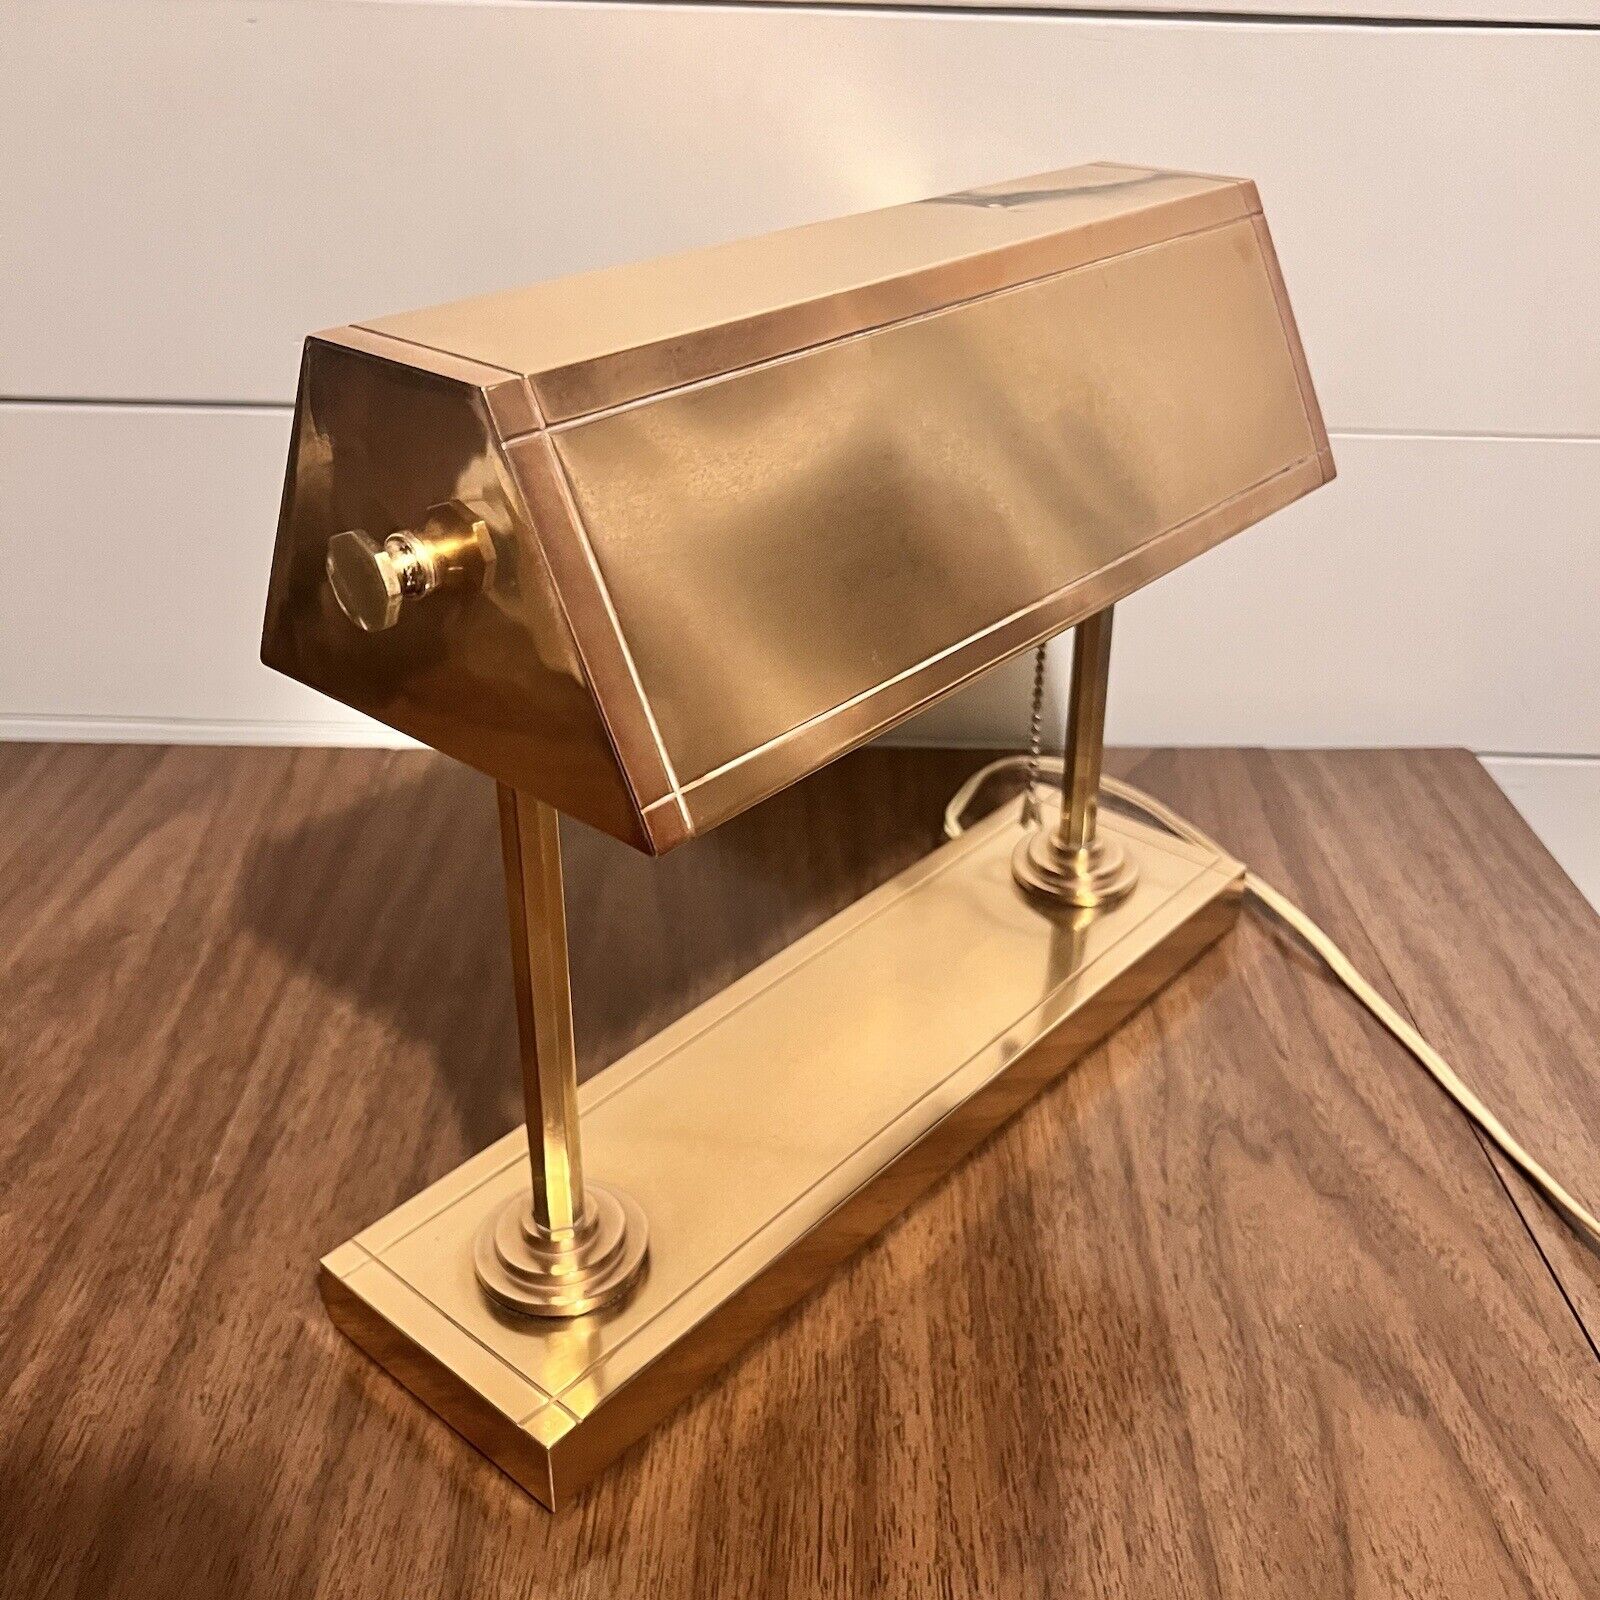 1940s Art Deco Copper Bank Teller Lamp Articulating Shade Vintage Desk Lamp